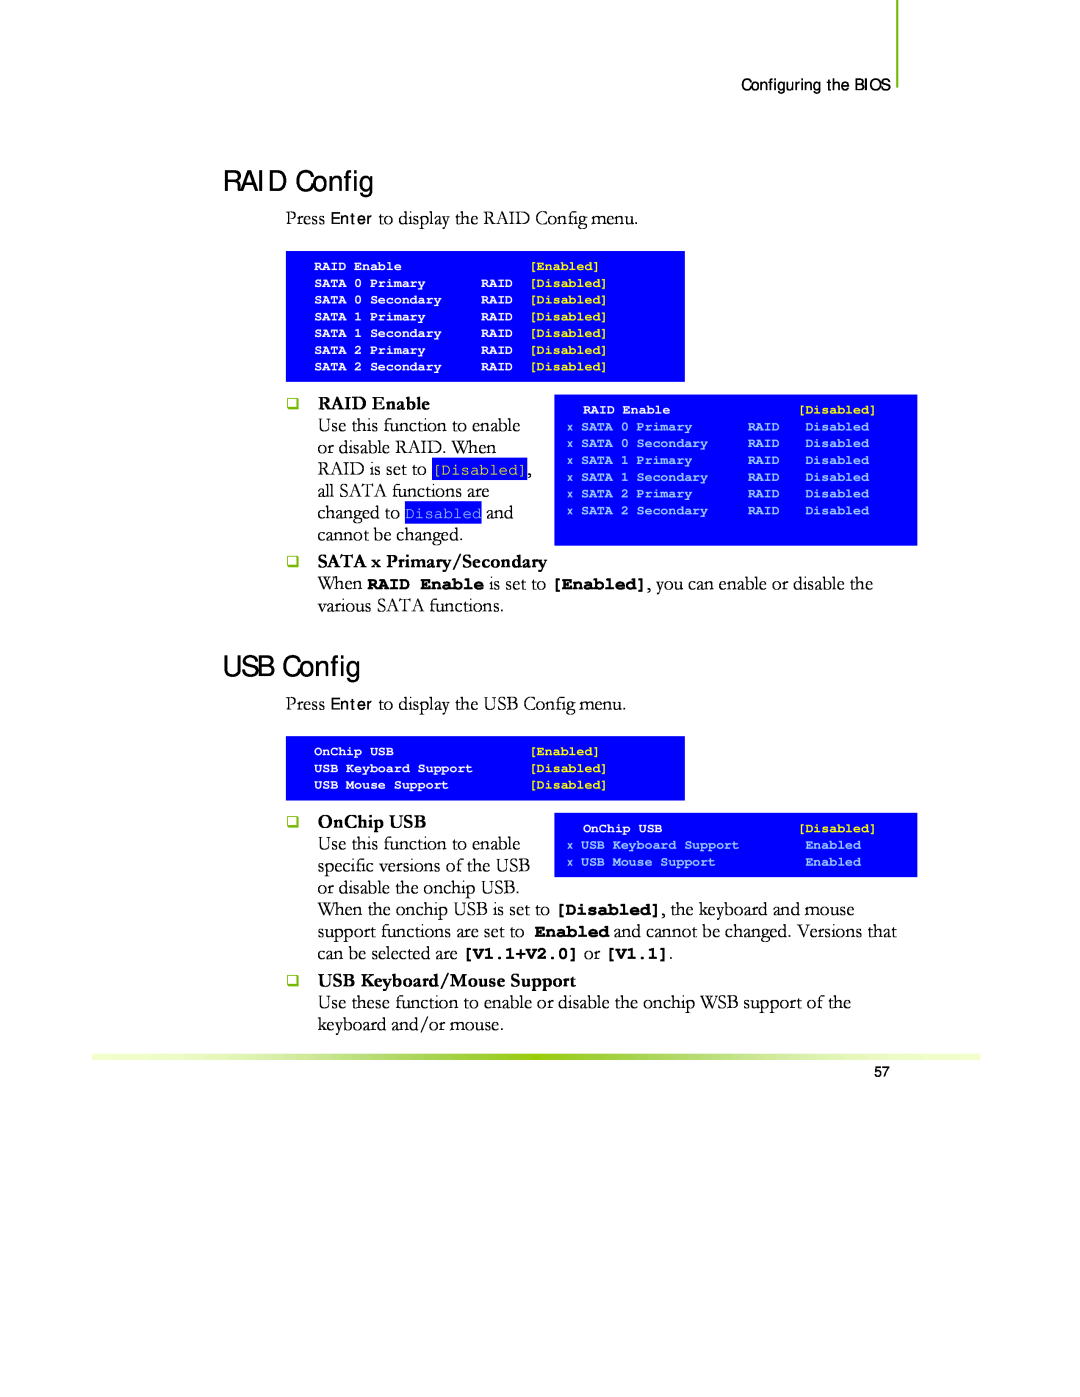 EVGA 122-CK-NF68-XX manual RAID Config, USB Config, ‰ RAID Enable, ‰ SATA x Primary/Secondary, OnChip USB 